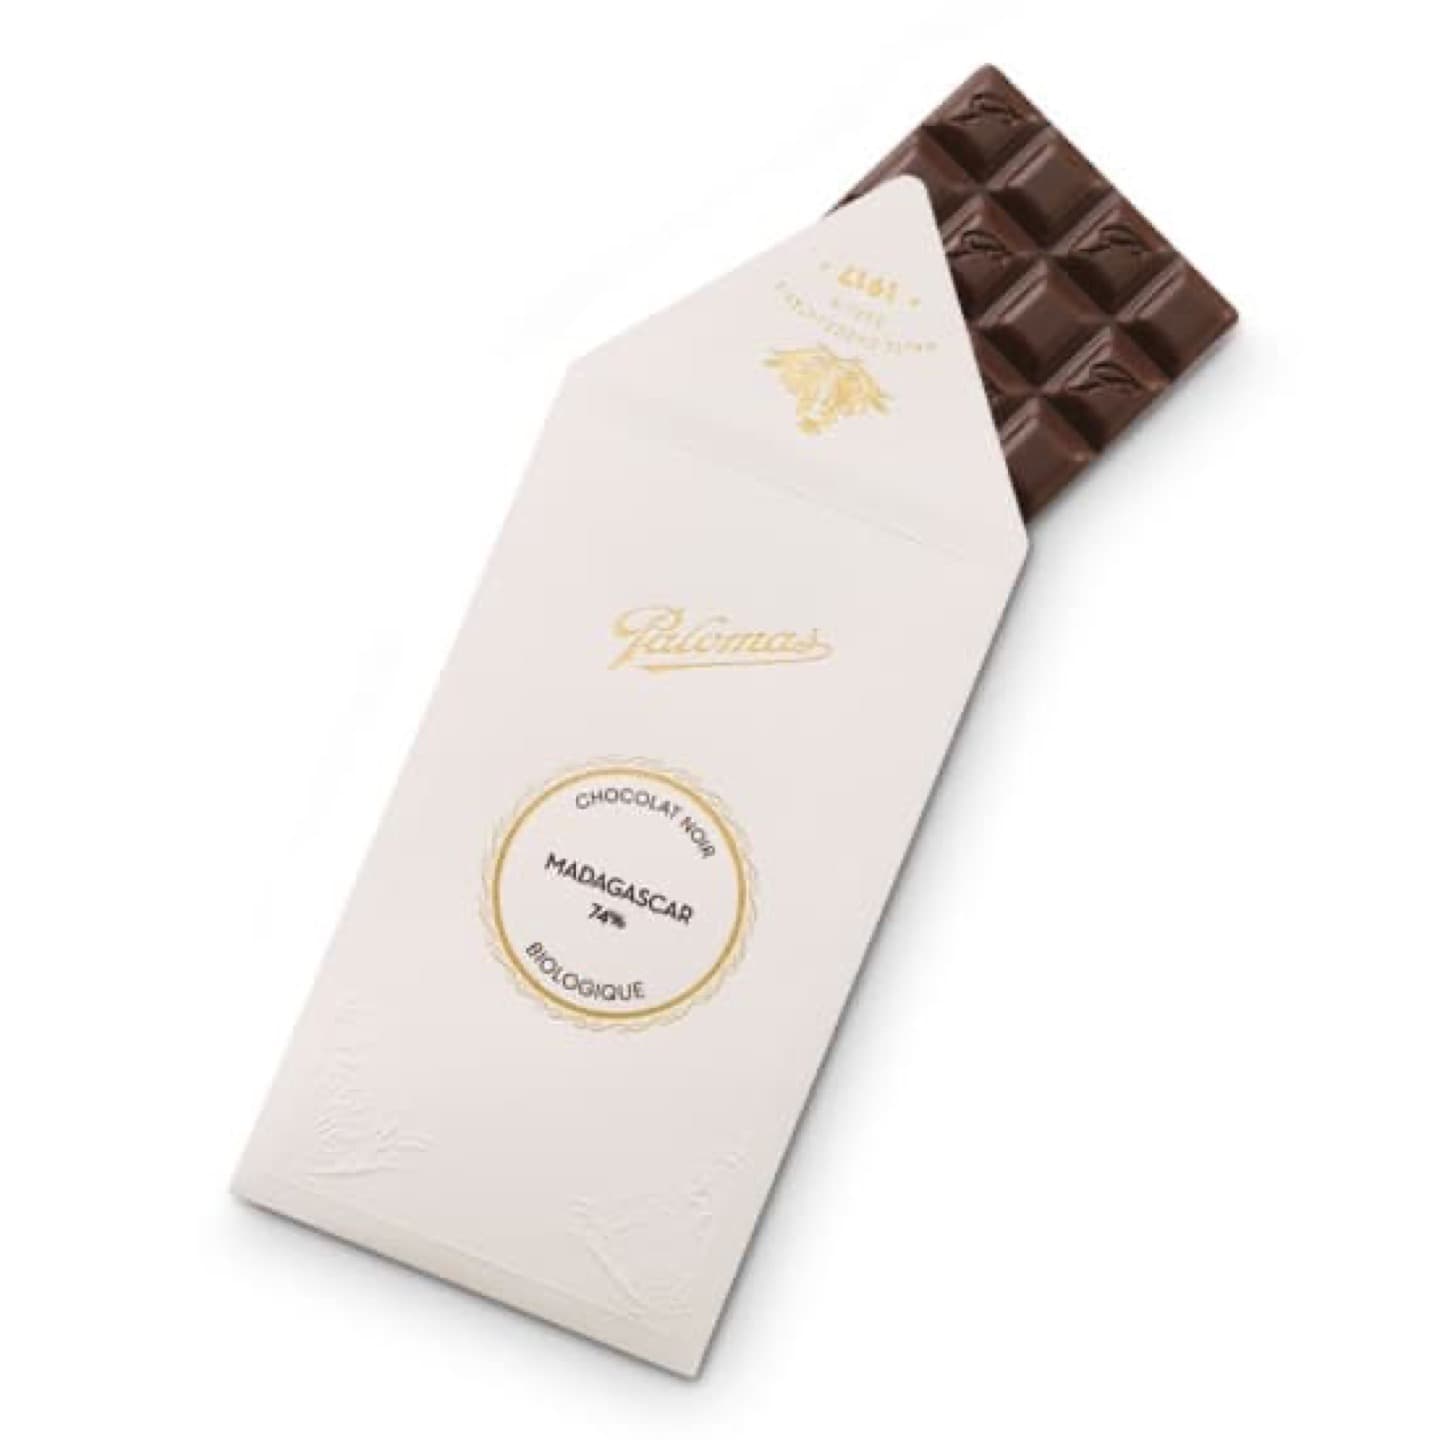 Tablette Chocolat Noir 74% origine Madagascar 90g